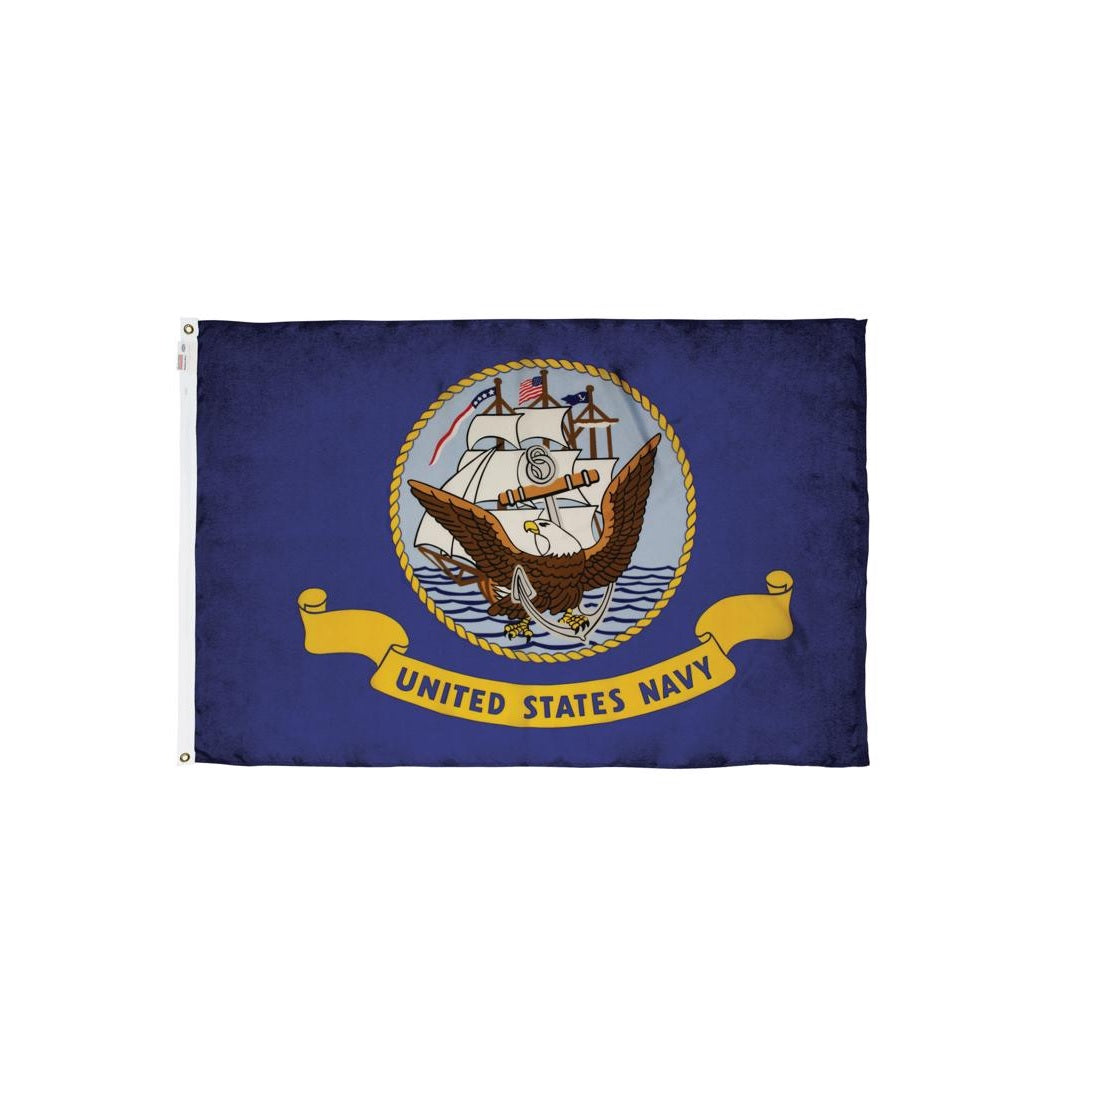 Valley Forge BTUSNV3 Military Navy Flag, Nylon